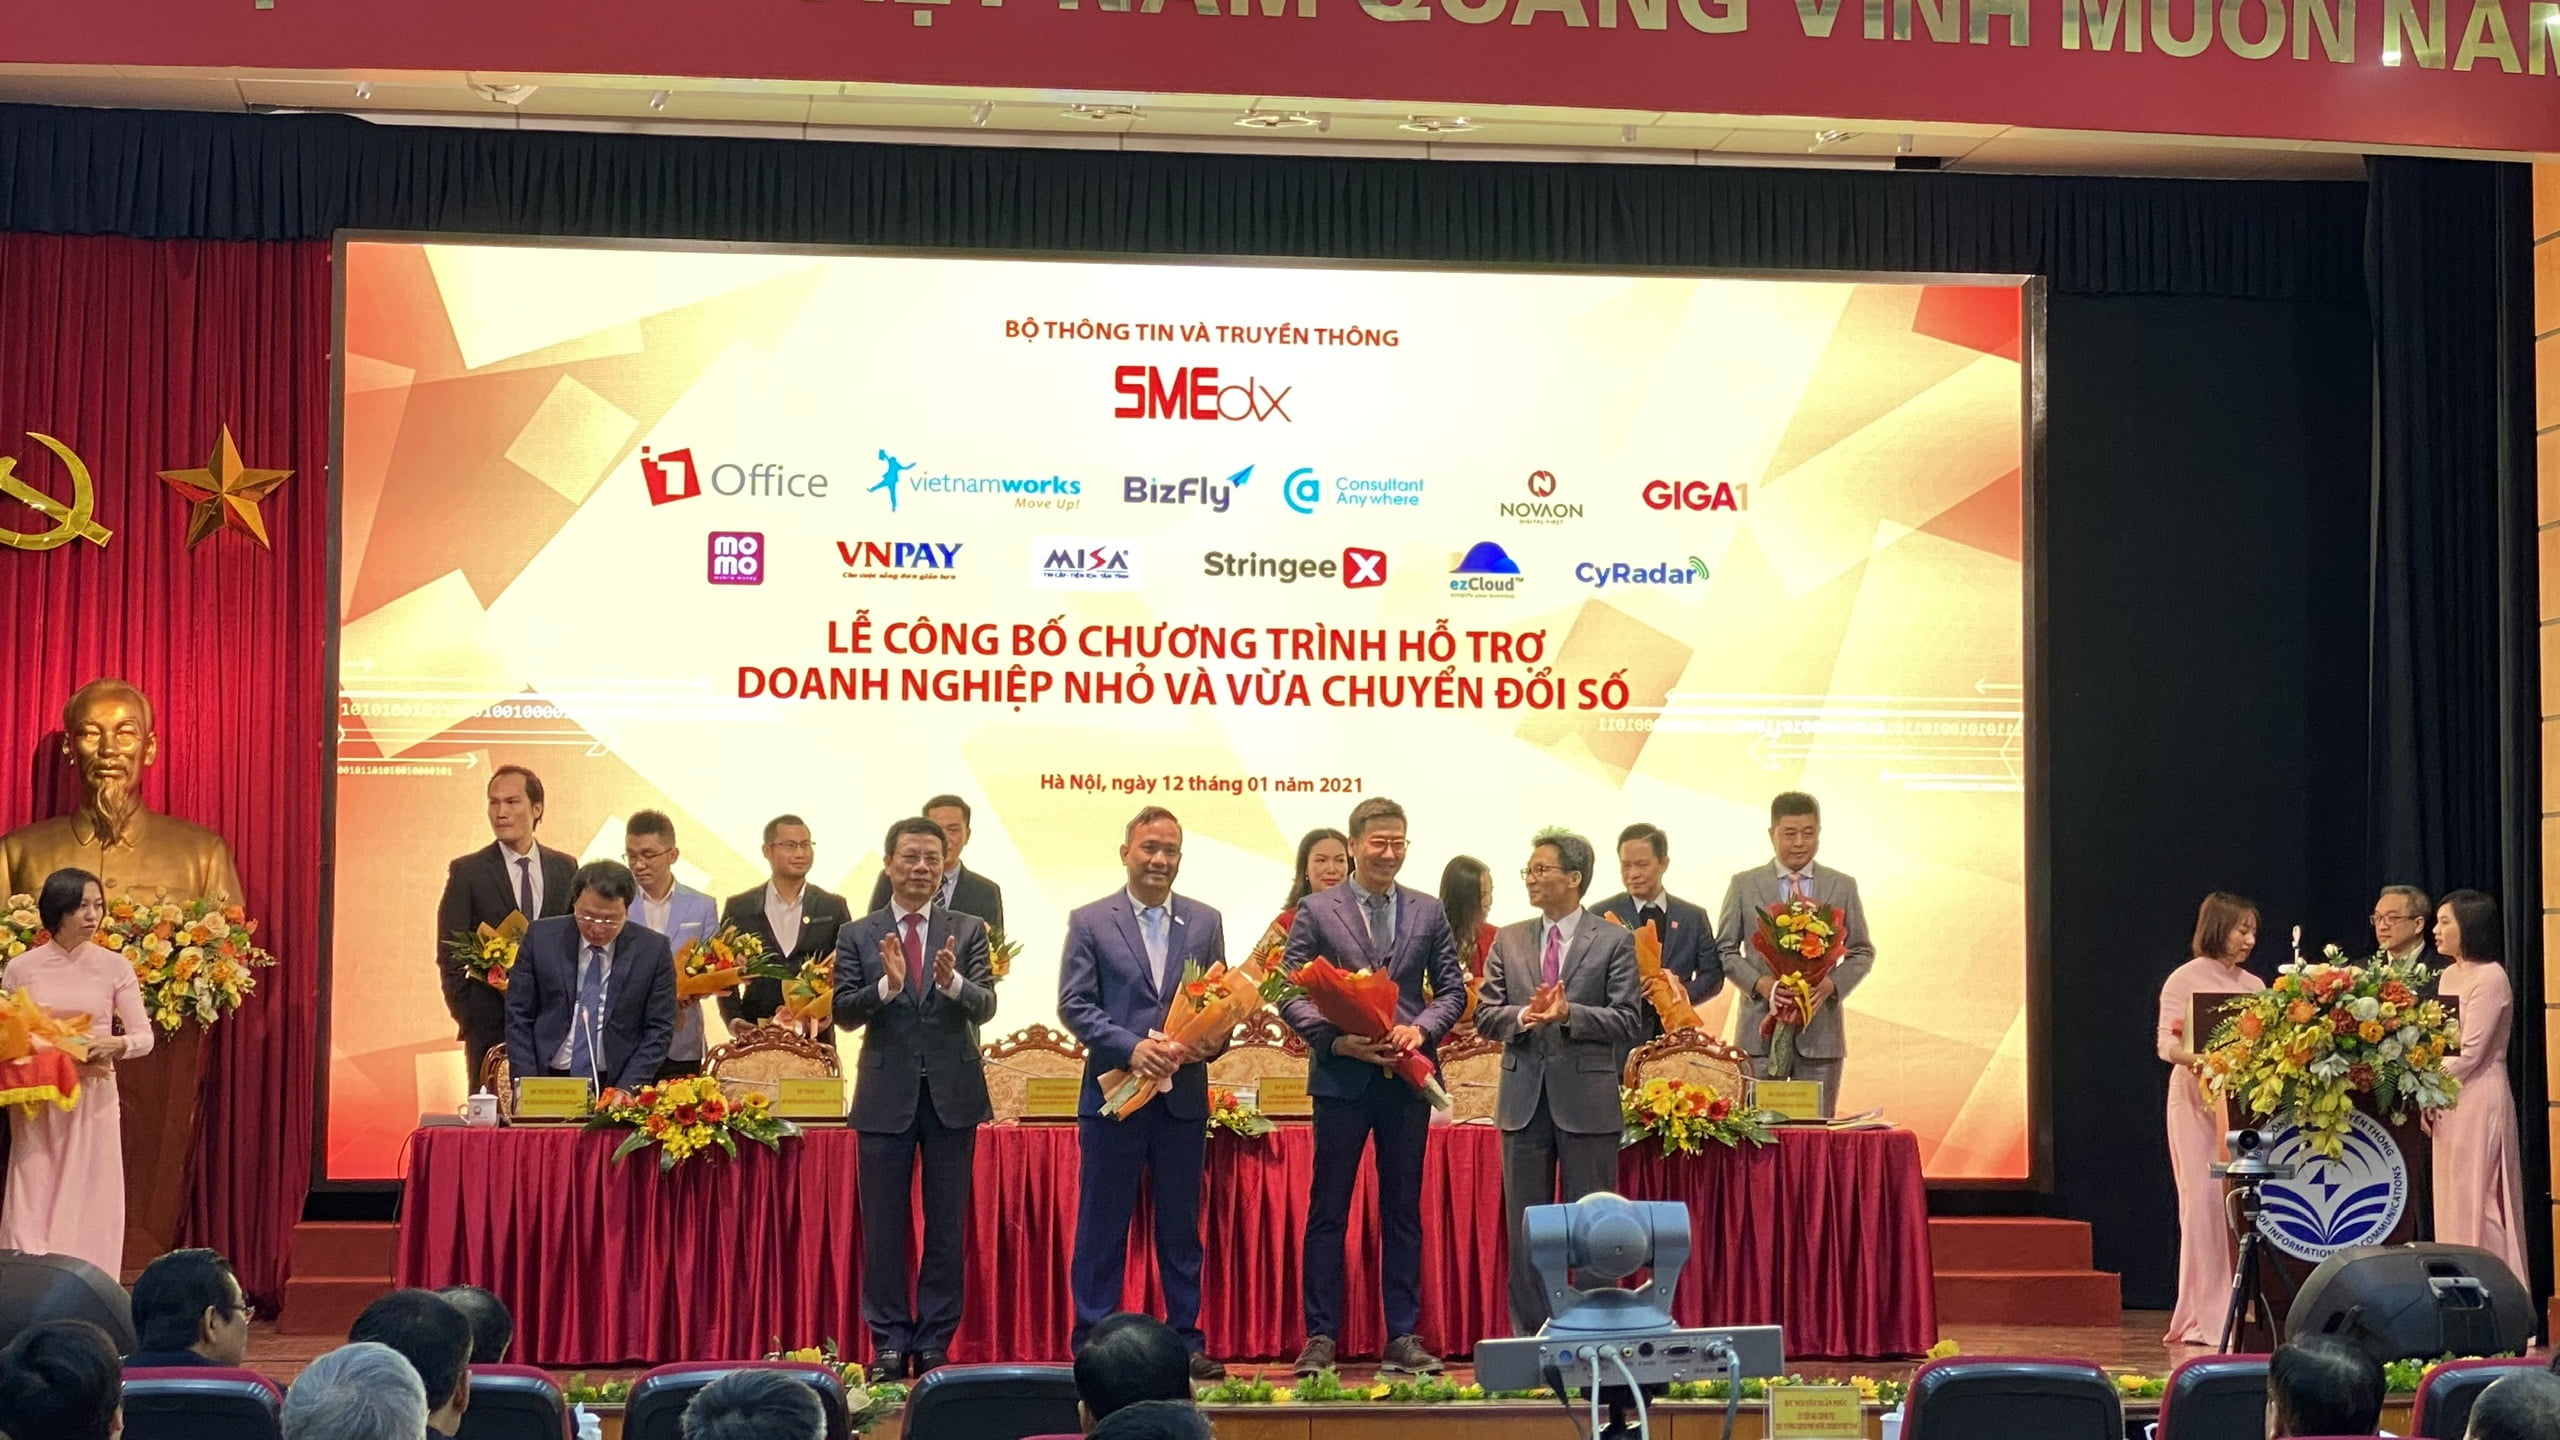 Ông Nguyễn Hoàng Dương - Giám đốc điều hành Công ty TNHH Công nghệ ezCloud Toàn Cầu lên nhận hoa của Phó Thủ tướng trong buổi Lễ